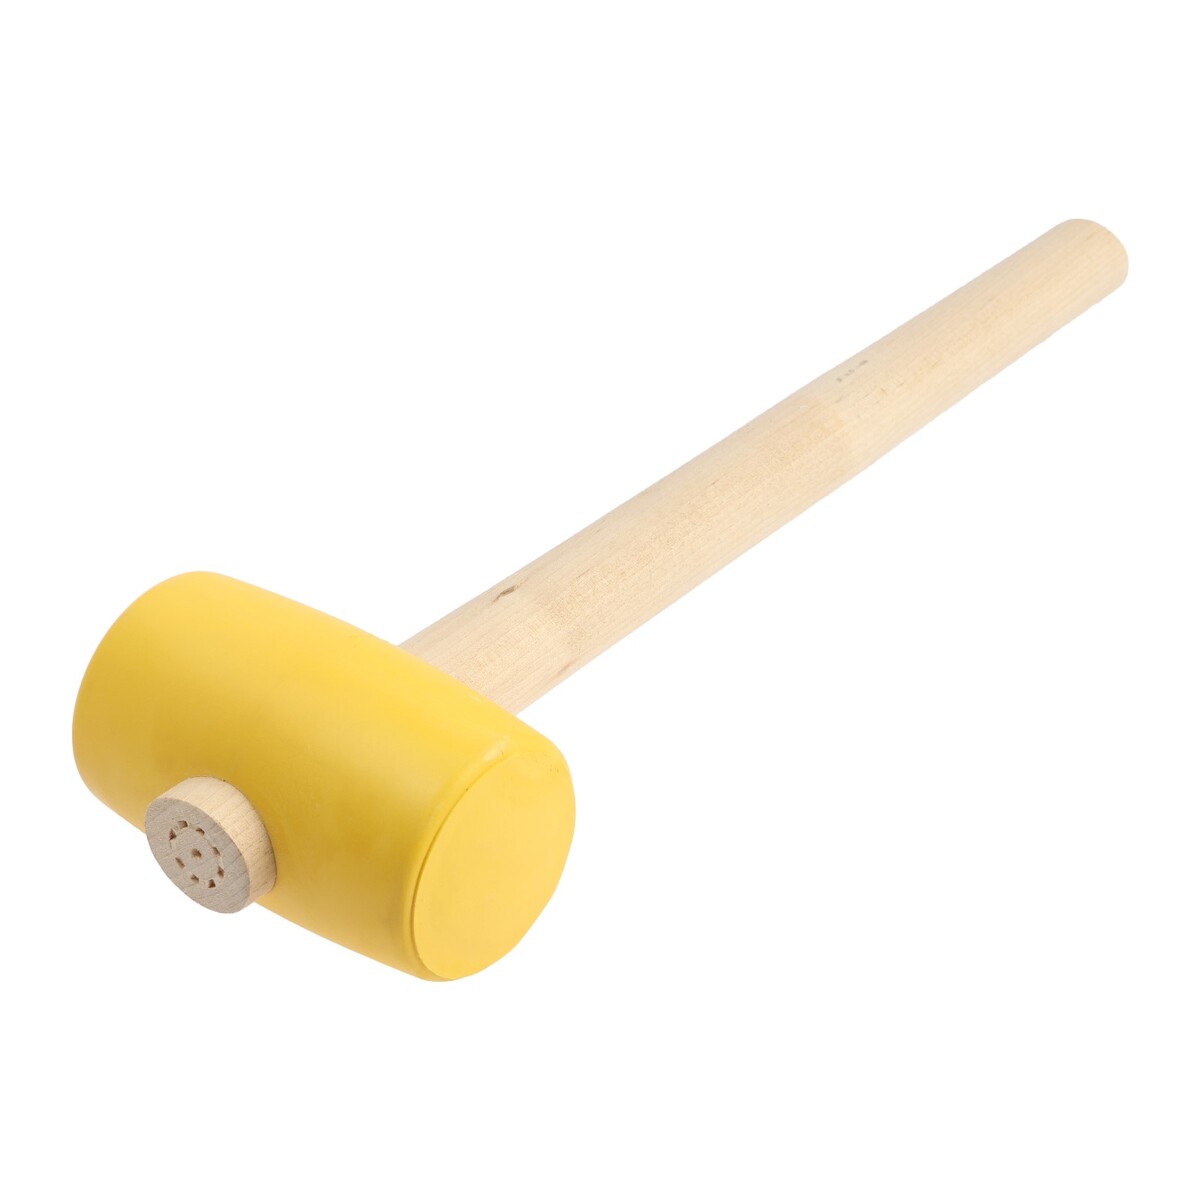 Киянка лом, деревянная рукоятка, желтая резина, 55 мм, 400 г киянка 450 г резина белая рукоятка фиберглассовая pobedit 2541345